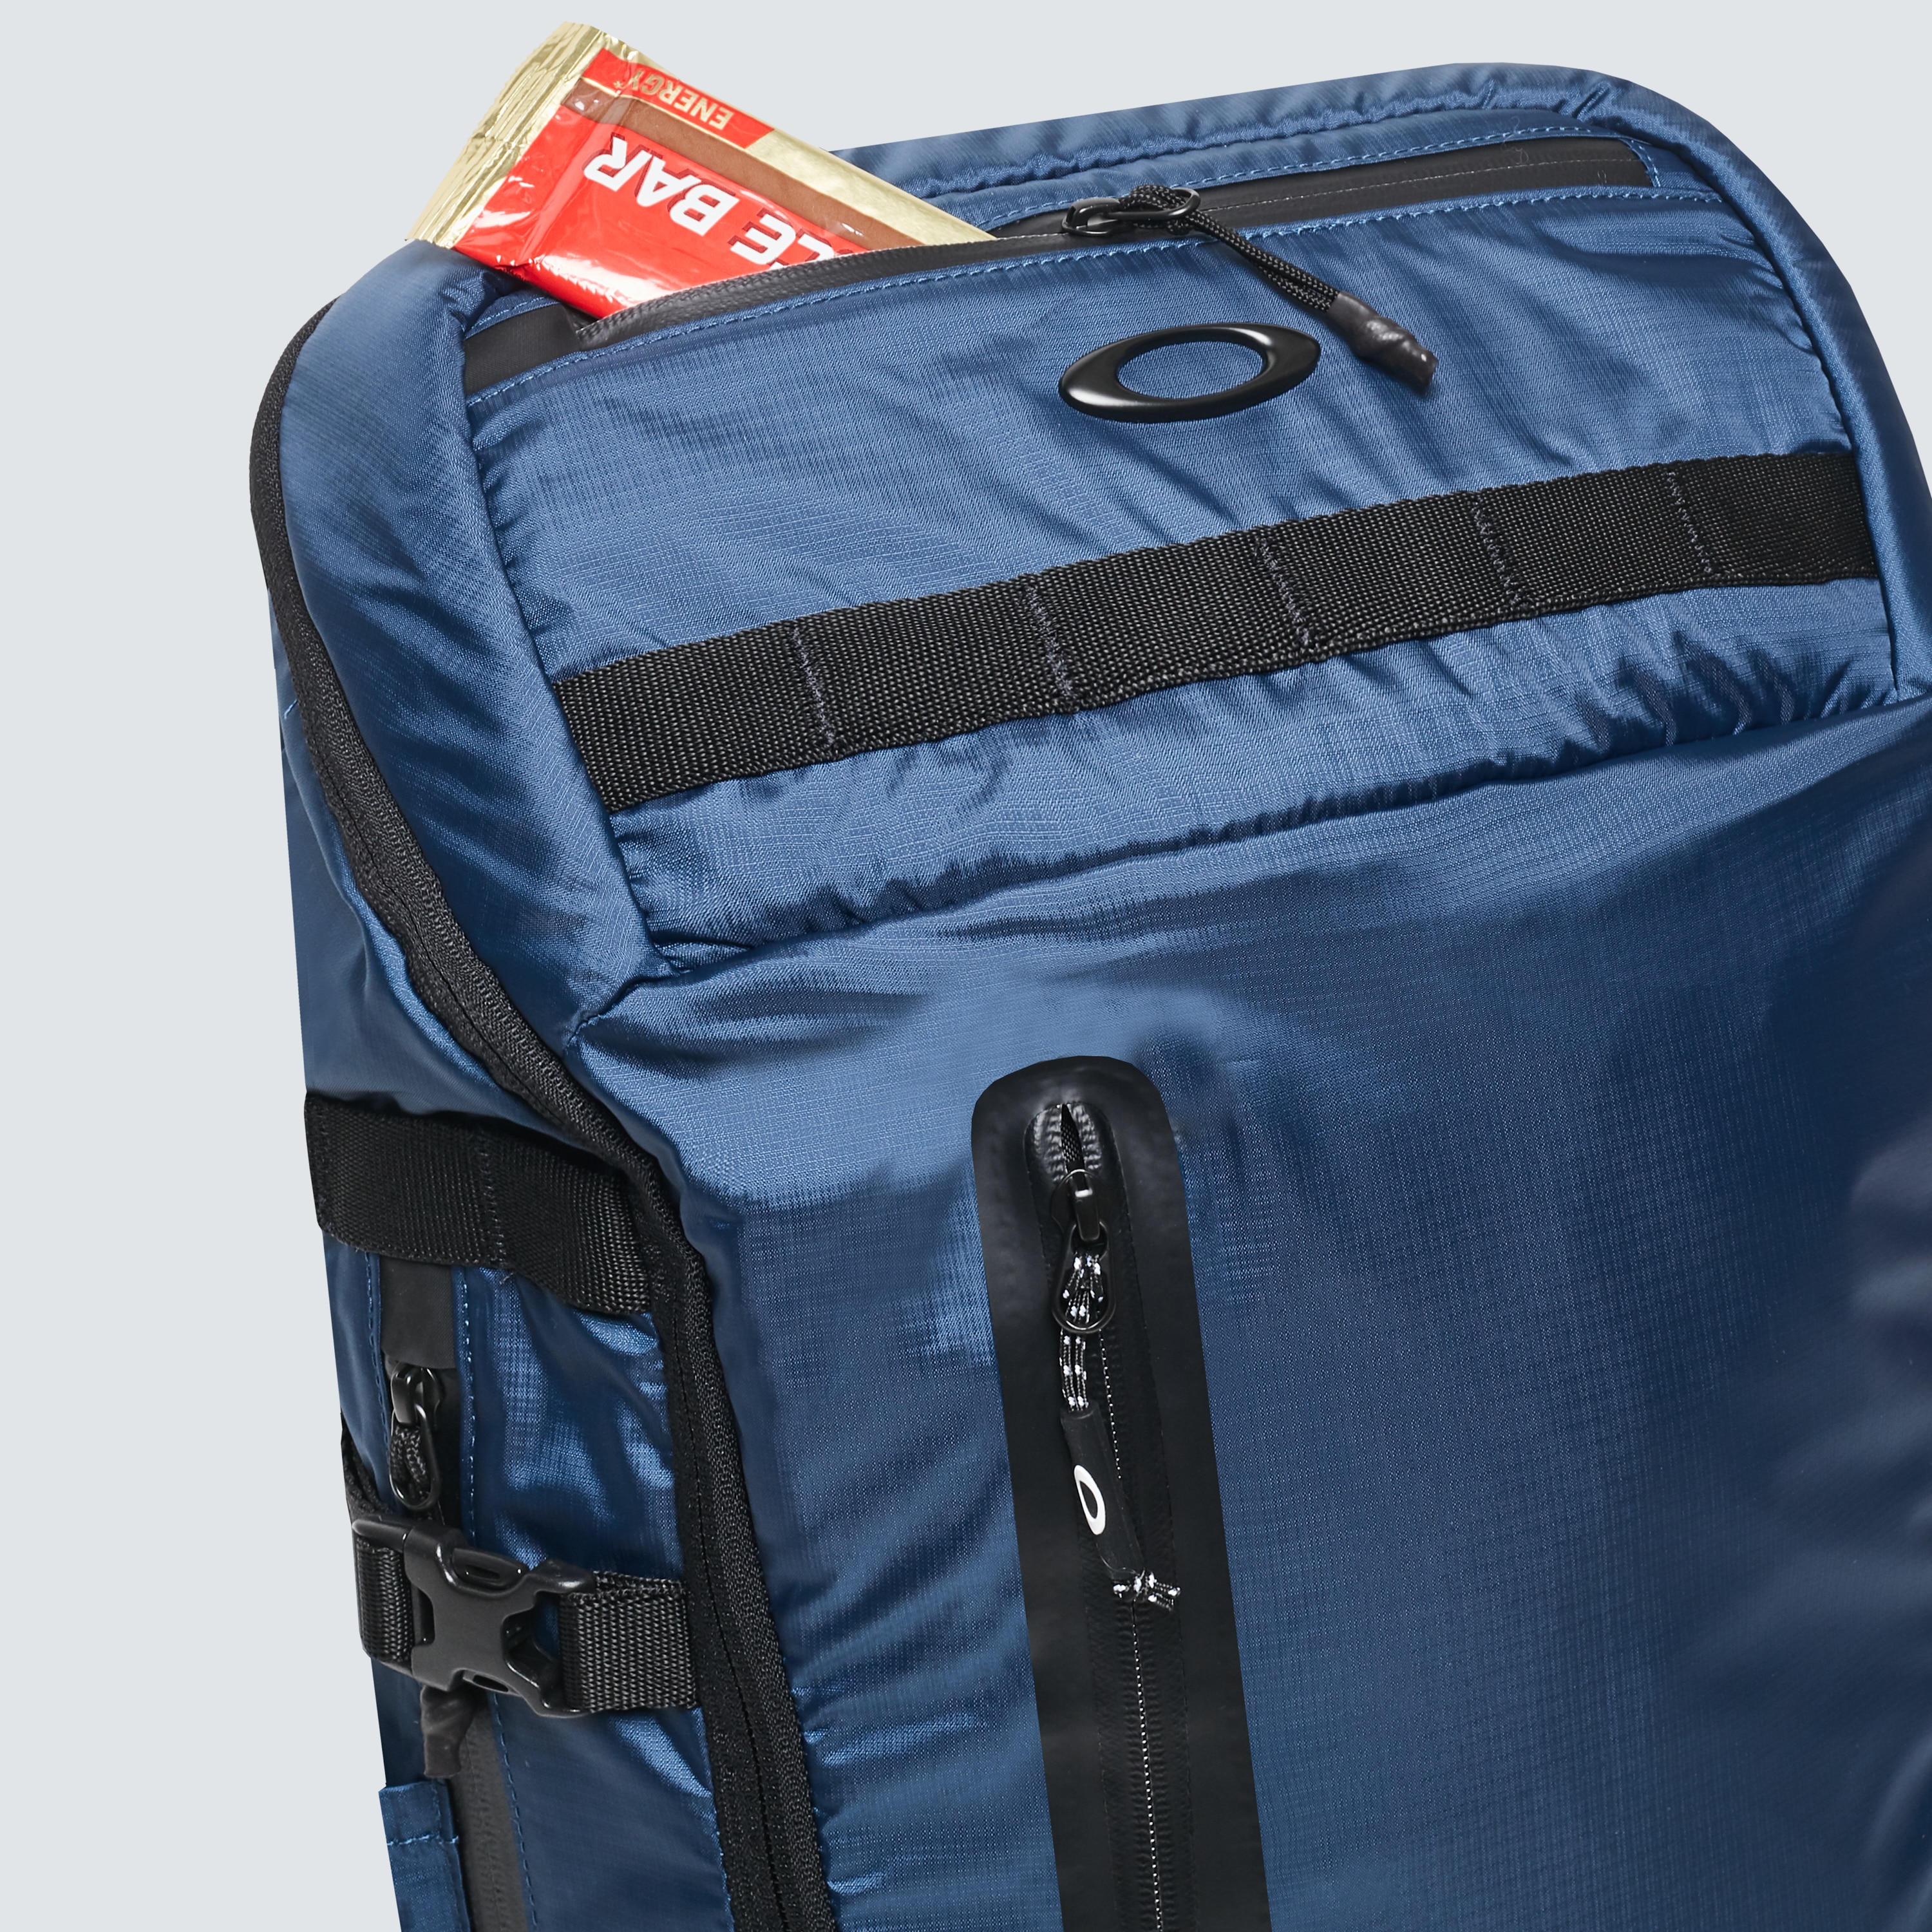 oakley waterproof backpack